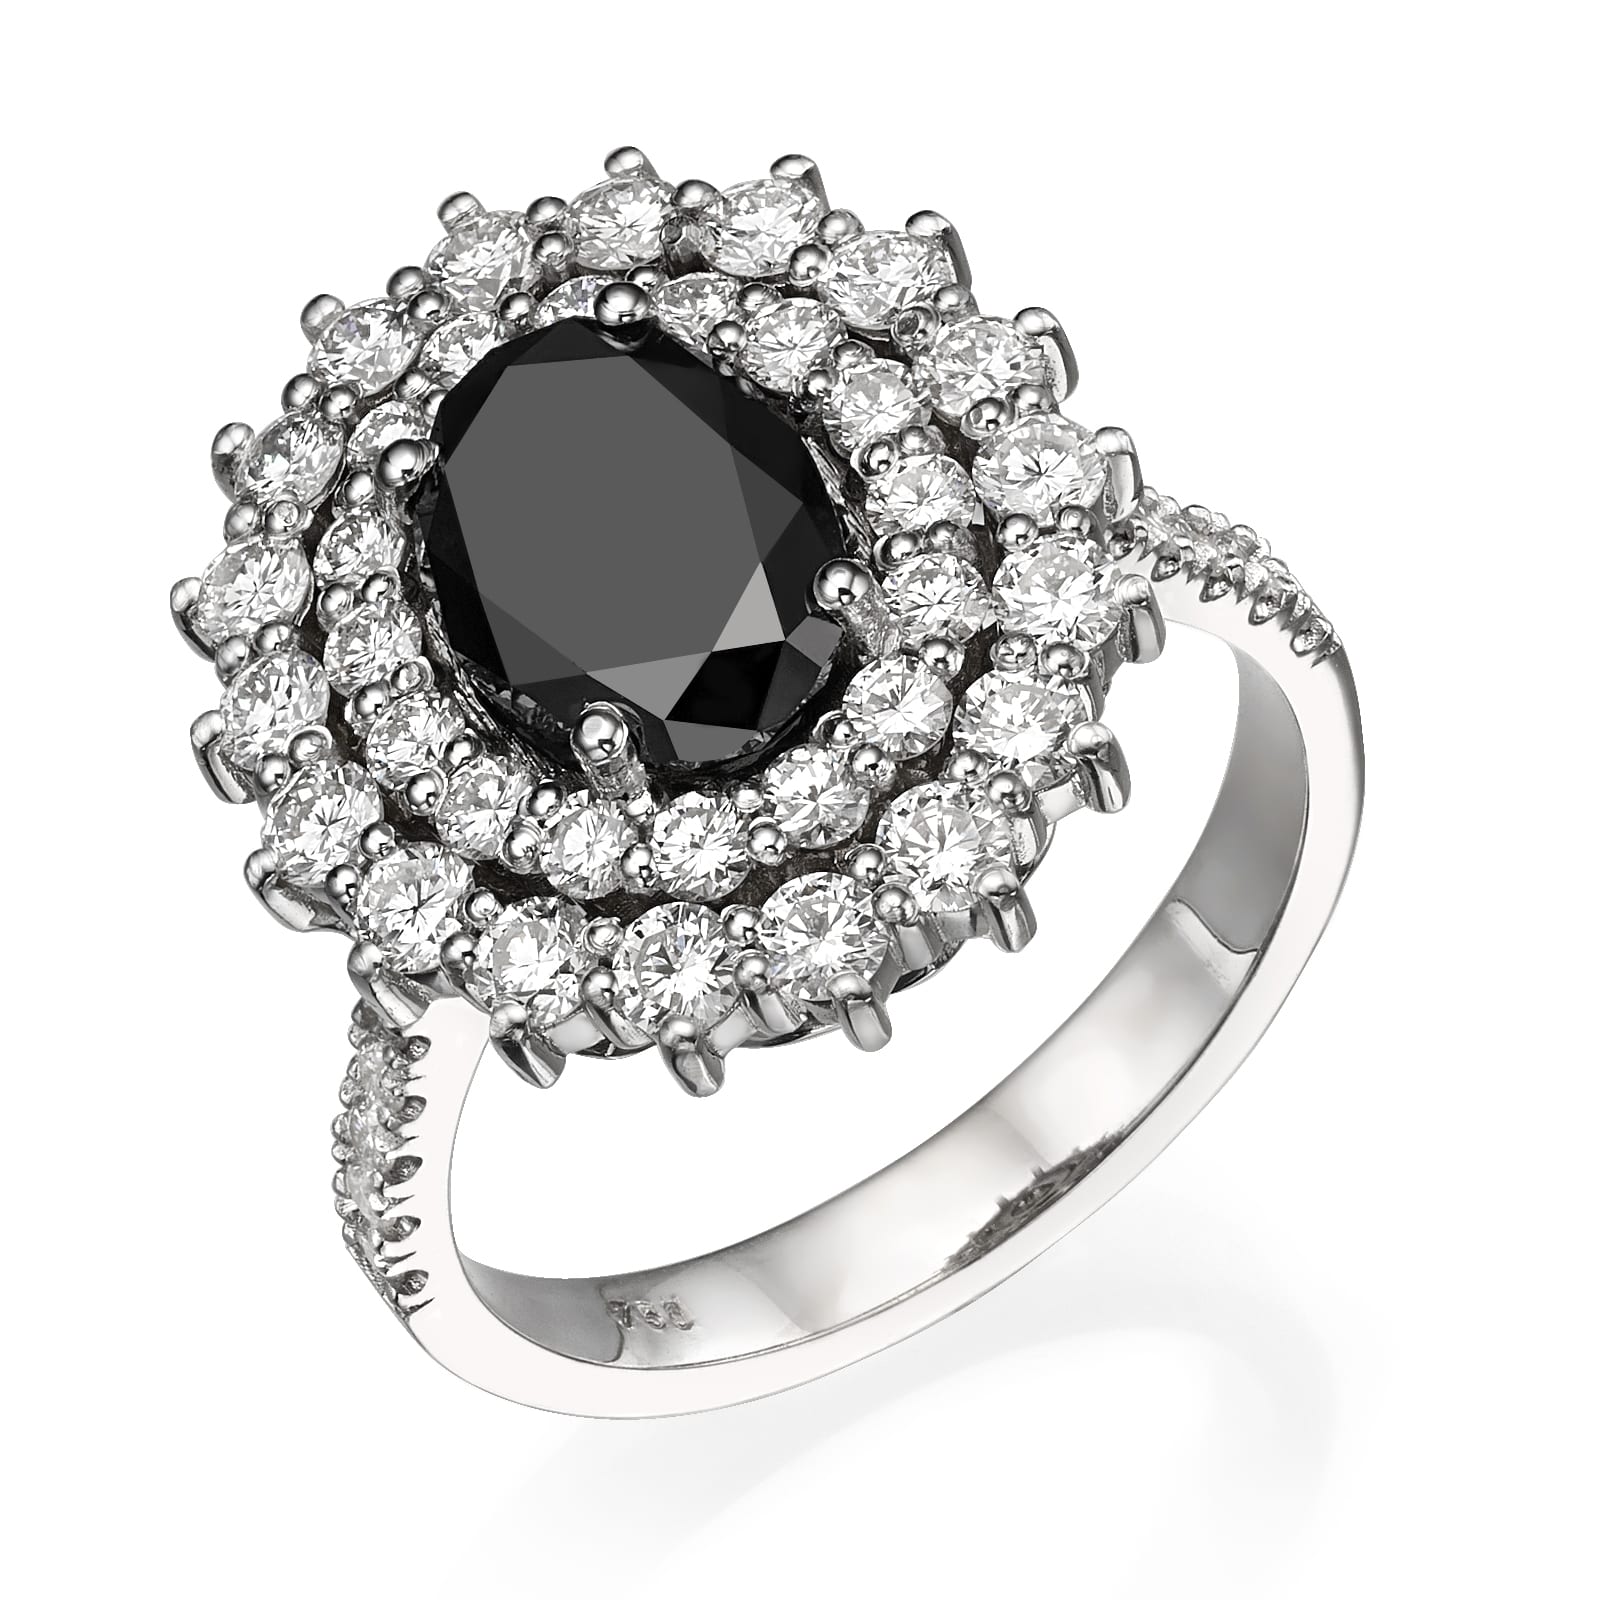 טבעת כסף אלגנטית הכוללת אבן חן שחורה גדולה מוקפת יהלומים נוצצים, משובצת בעיצוב הילה יוקרתי טבעת יהלום שחור דגם Dominique.